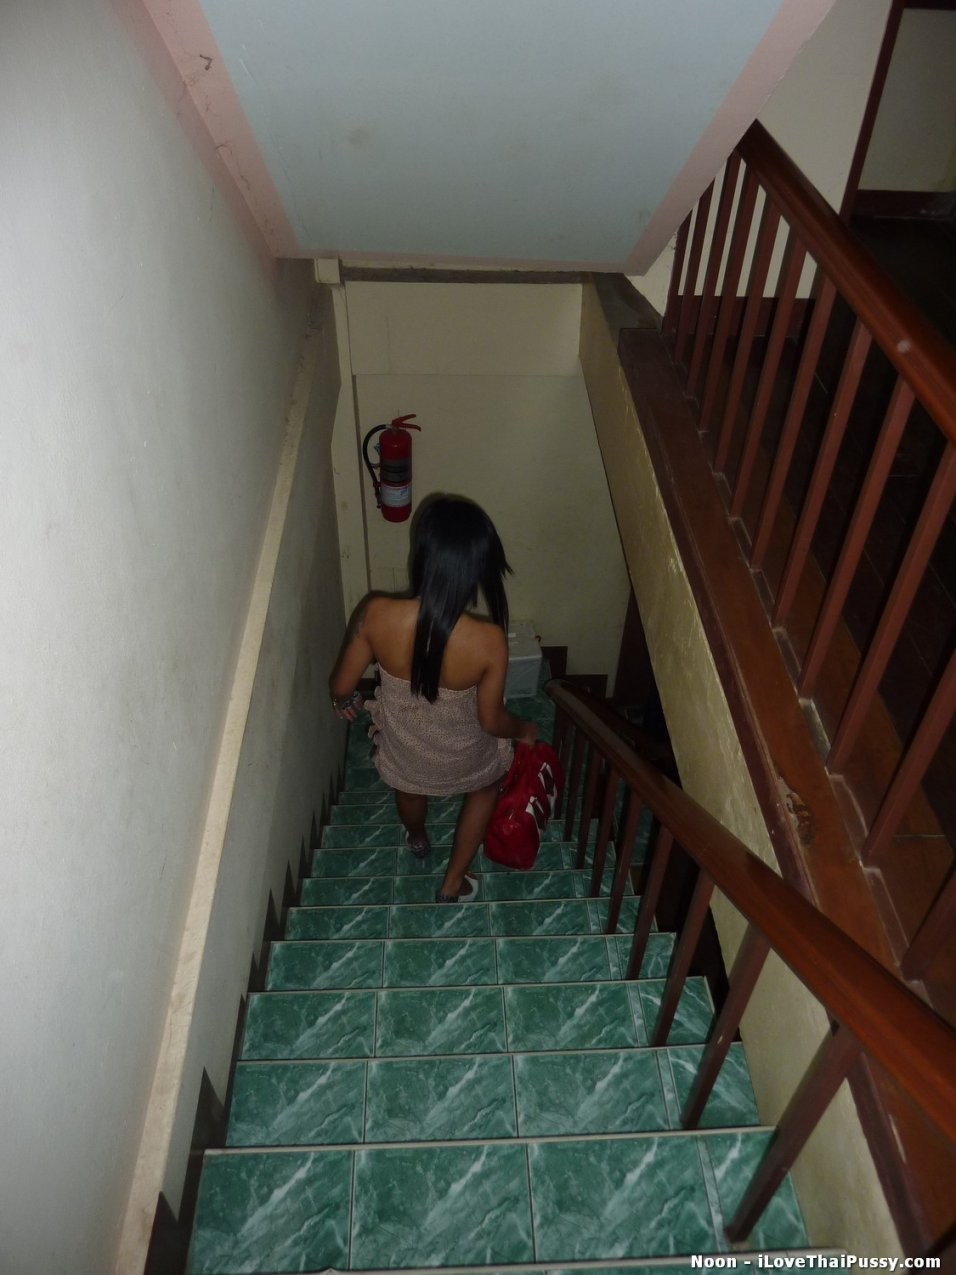 Des prostituées thaïlandaises pénétrées par un touriste sexuel répugnant.
 #69921235